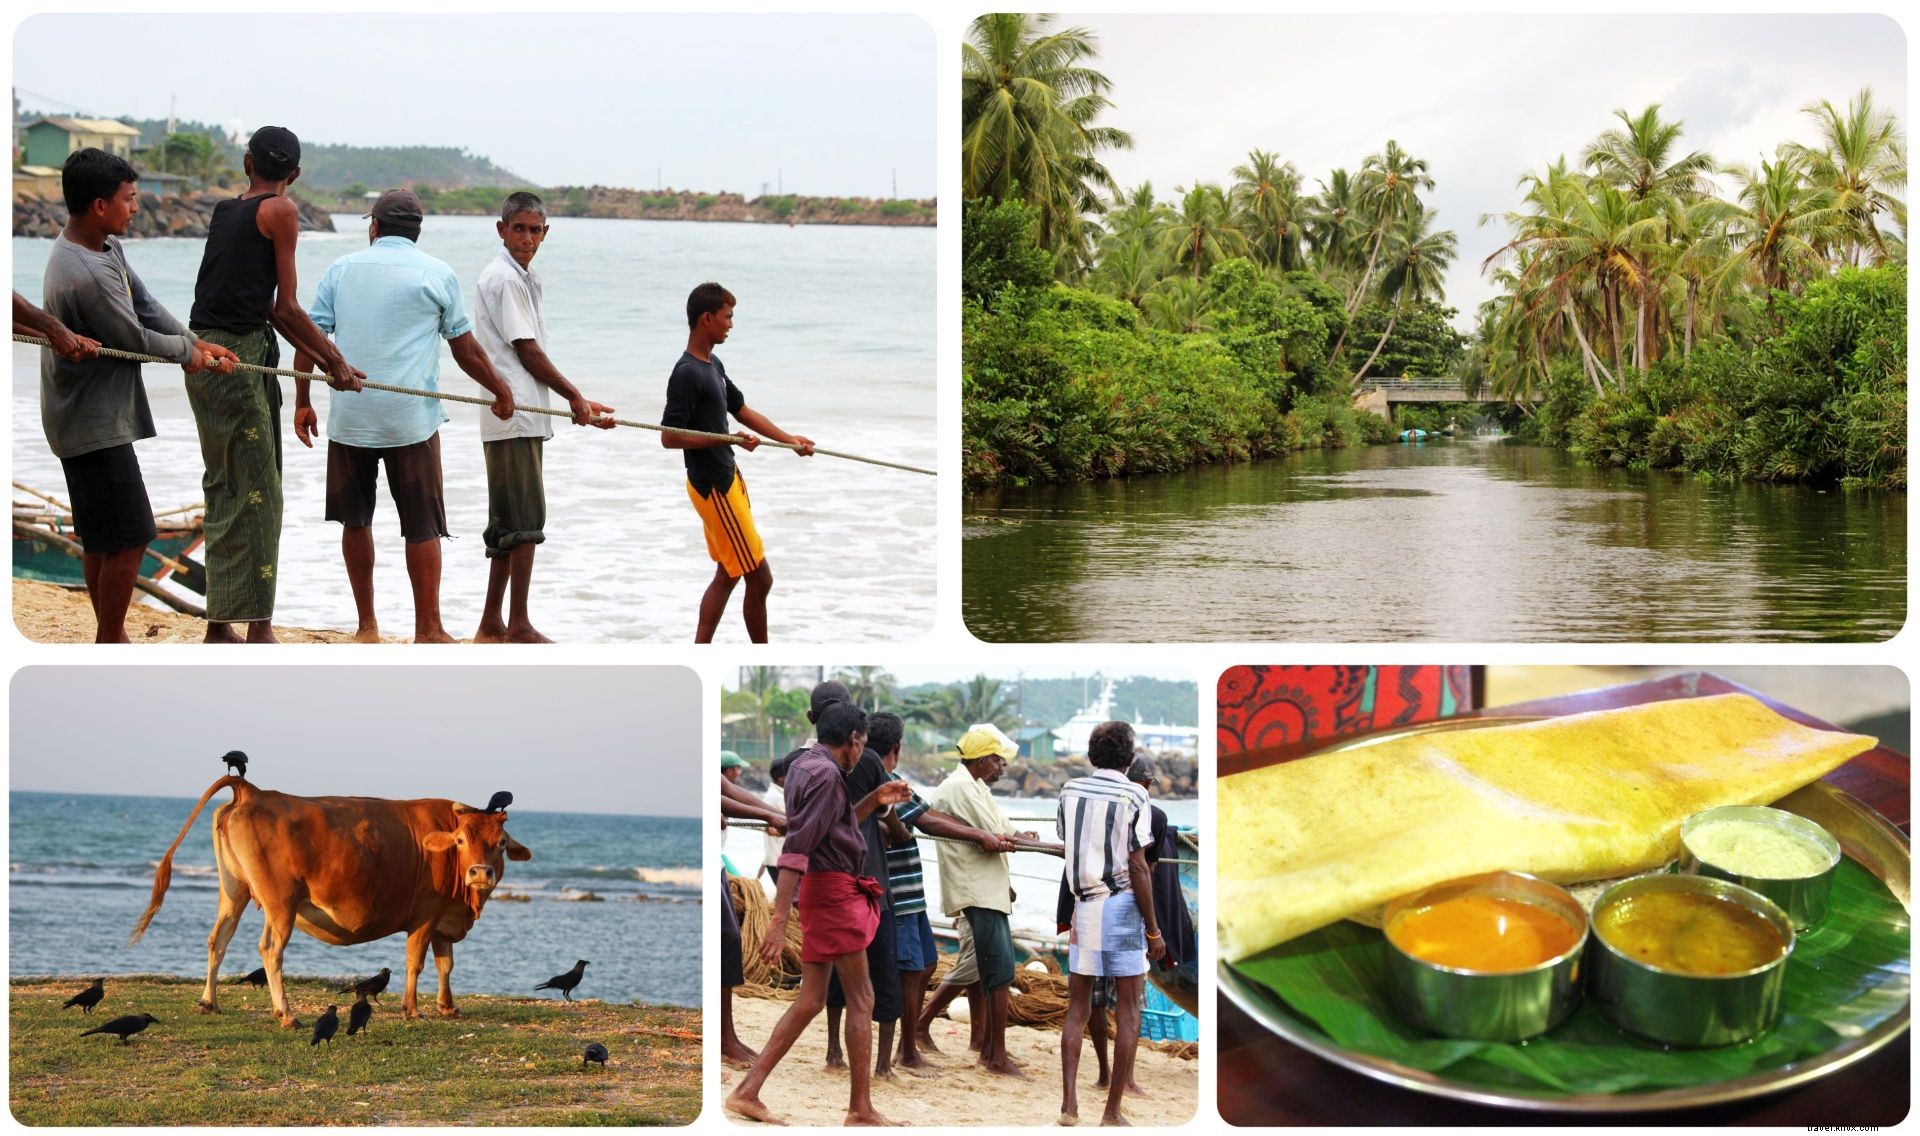 Présentation du Sri Lanka :Mes premières impressions et quelques faits amusants